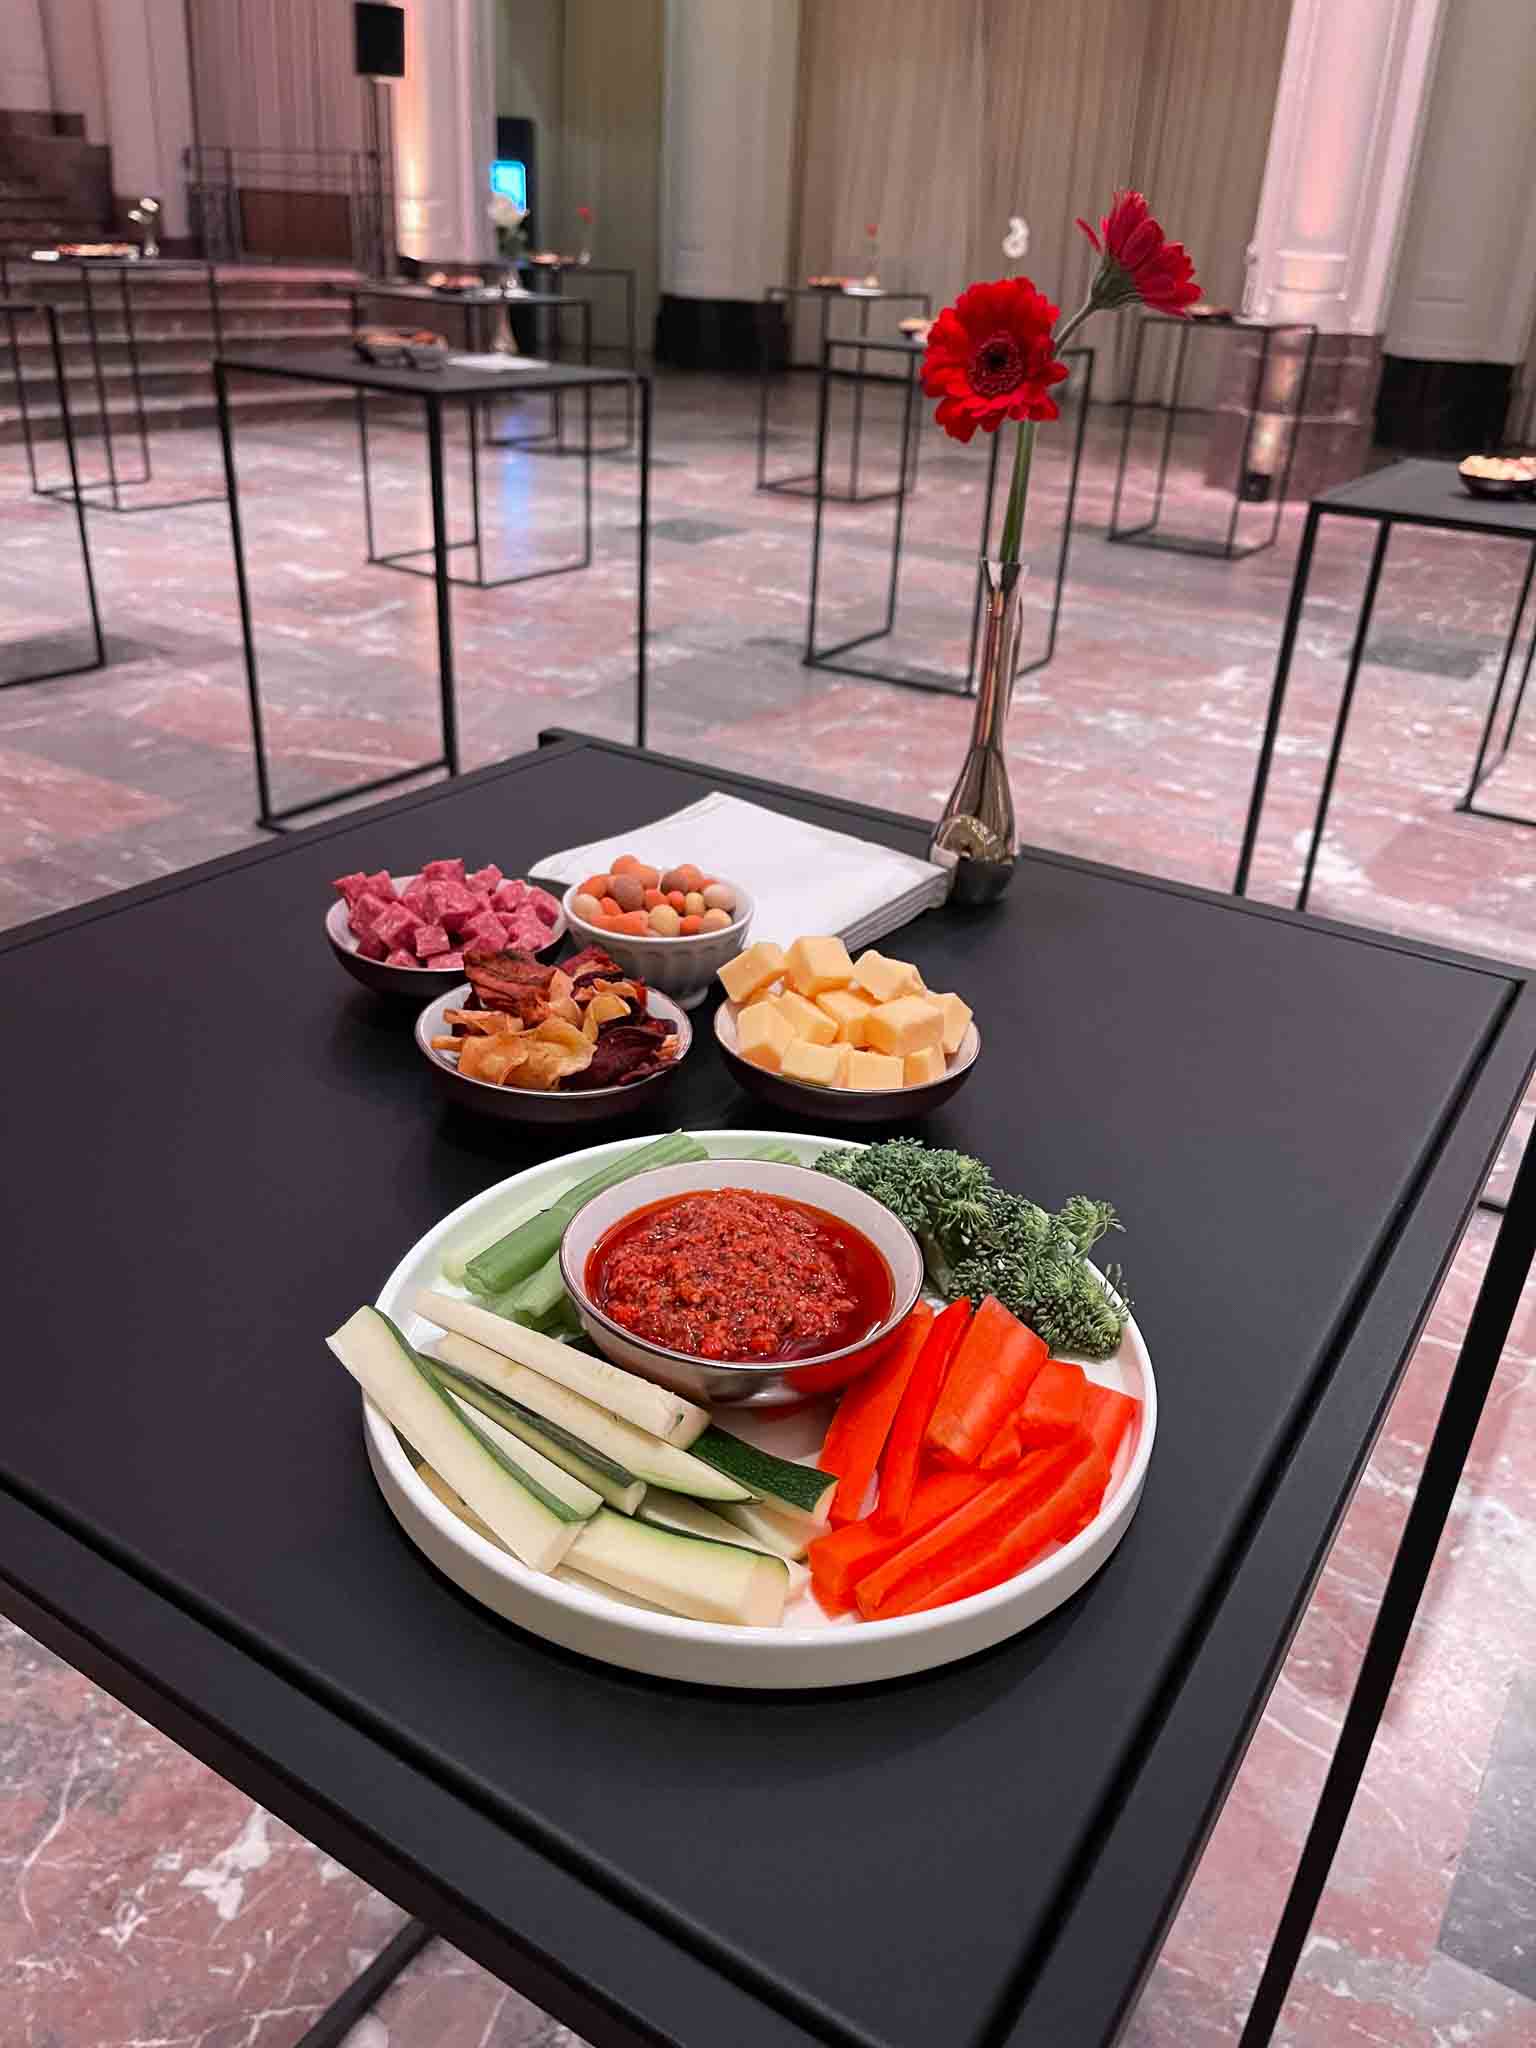 Een zwarte tafel met daarop een bord met celder, wortel, brocolli en een dipsausje in het midden. Daarachter meerdere kleine kommetjes met borrelhapjes waaronder nootjes, kaas, salami en chips.